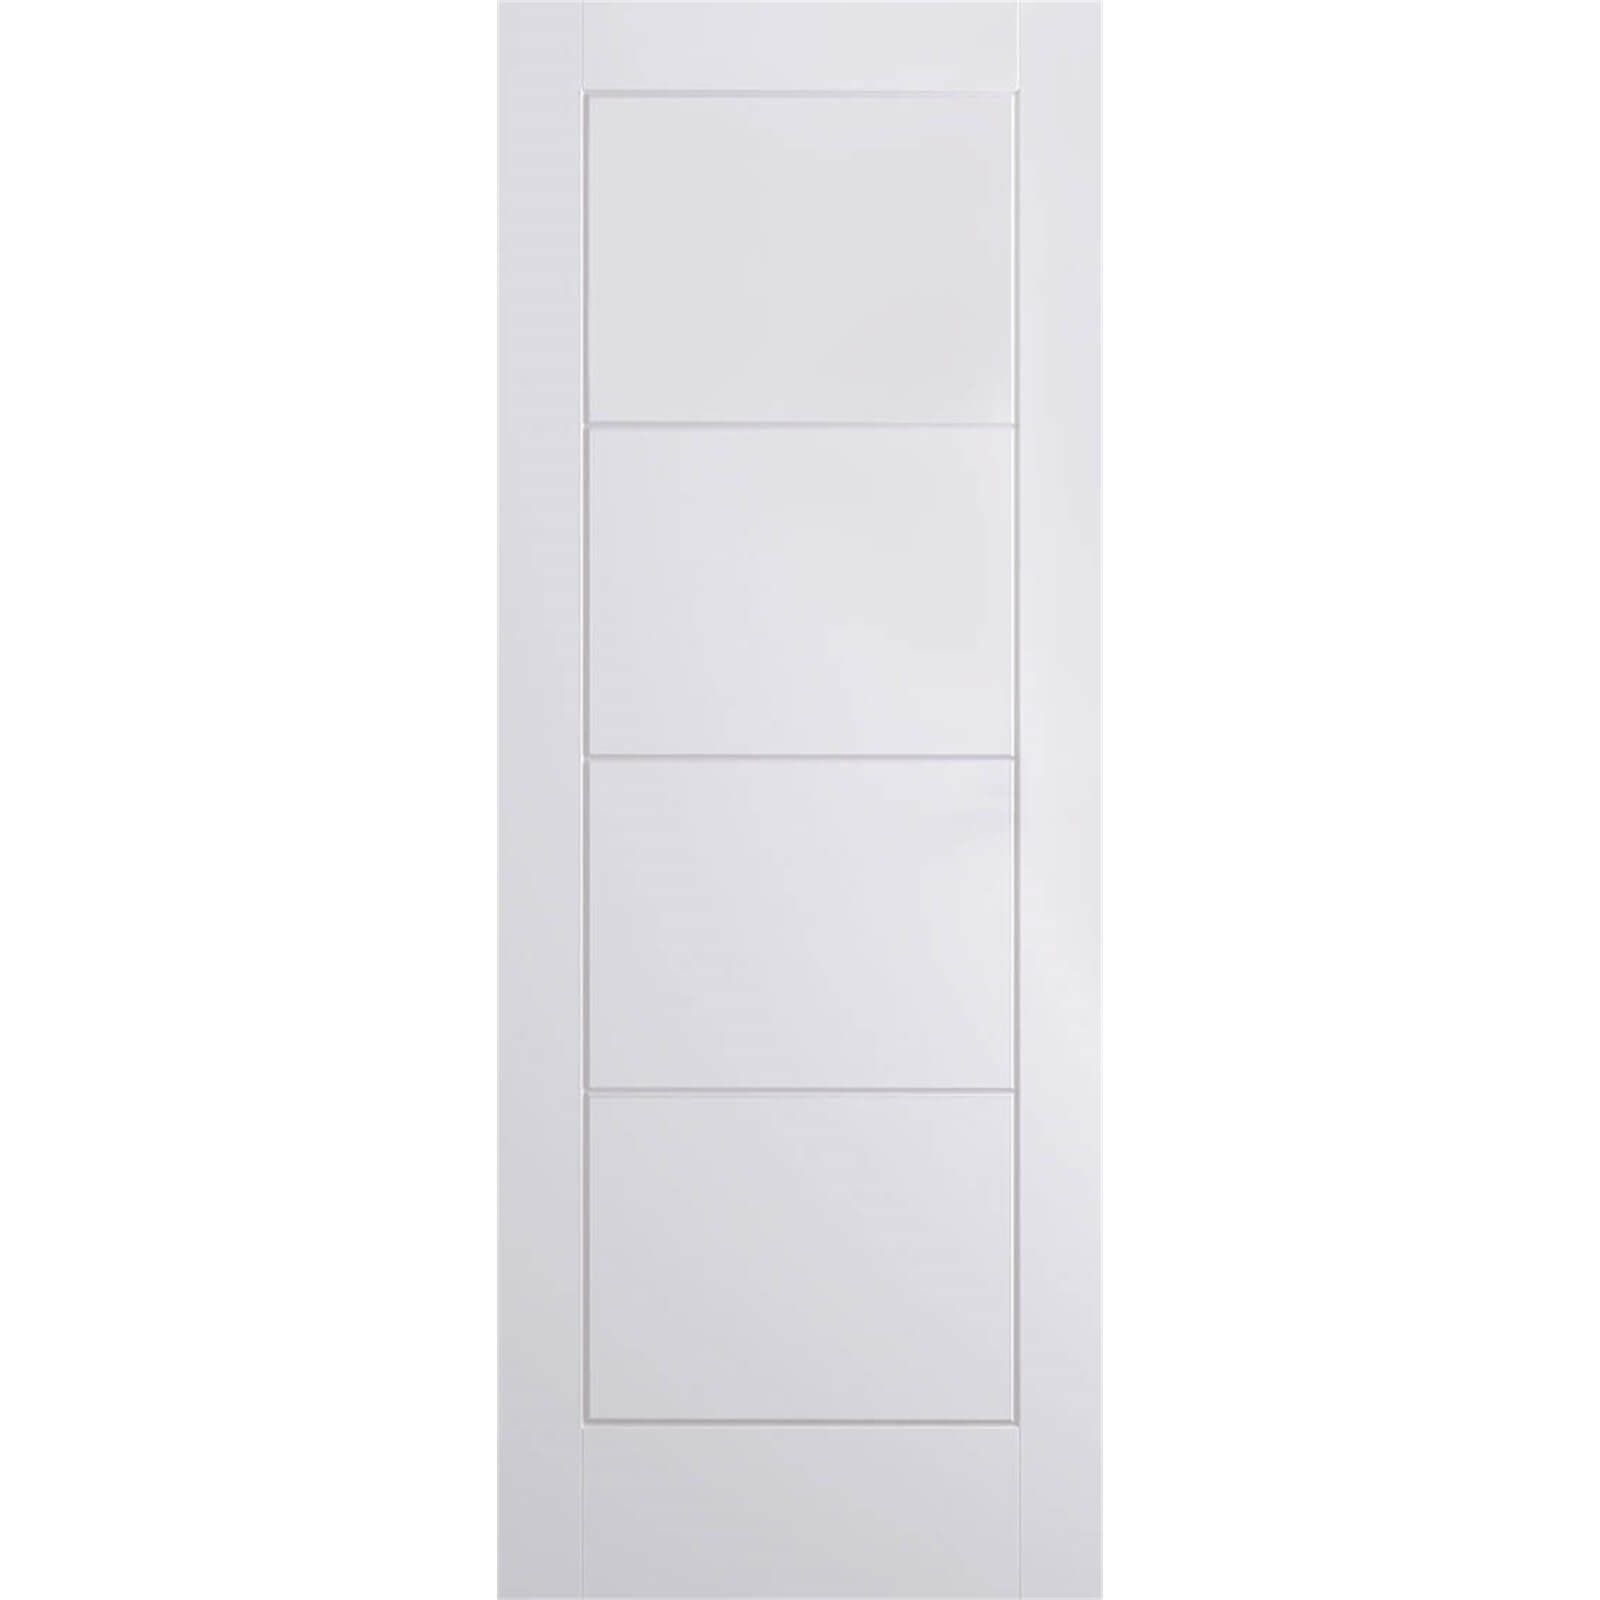 Ladder Internal Primed White 4 Panel Door - 762 x 1981mm